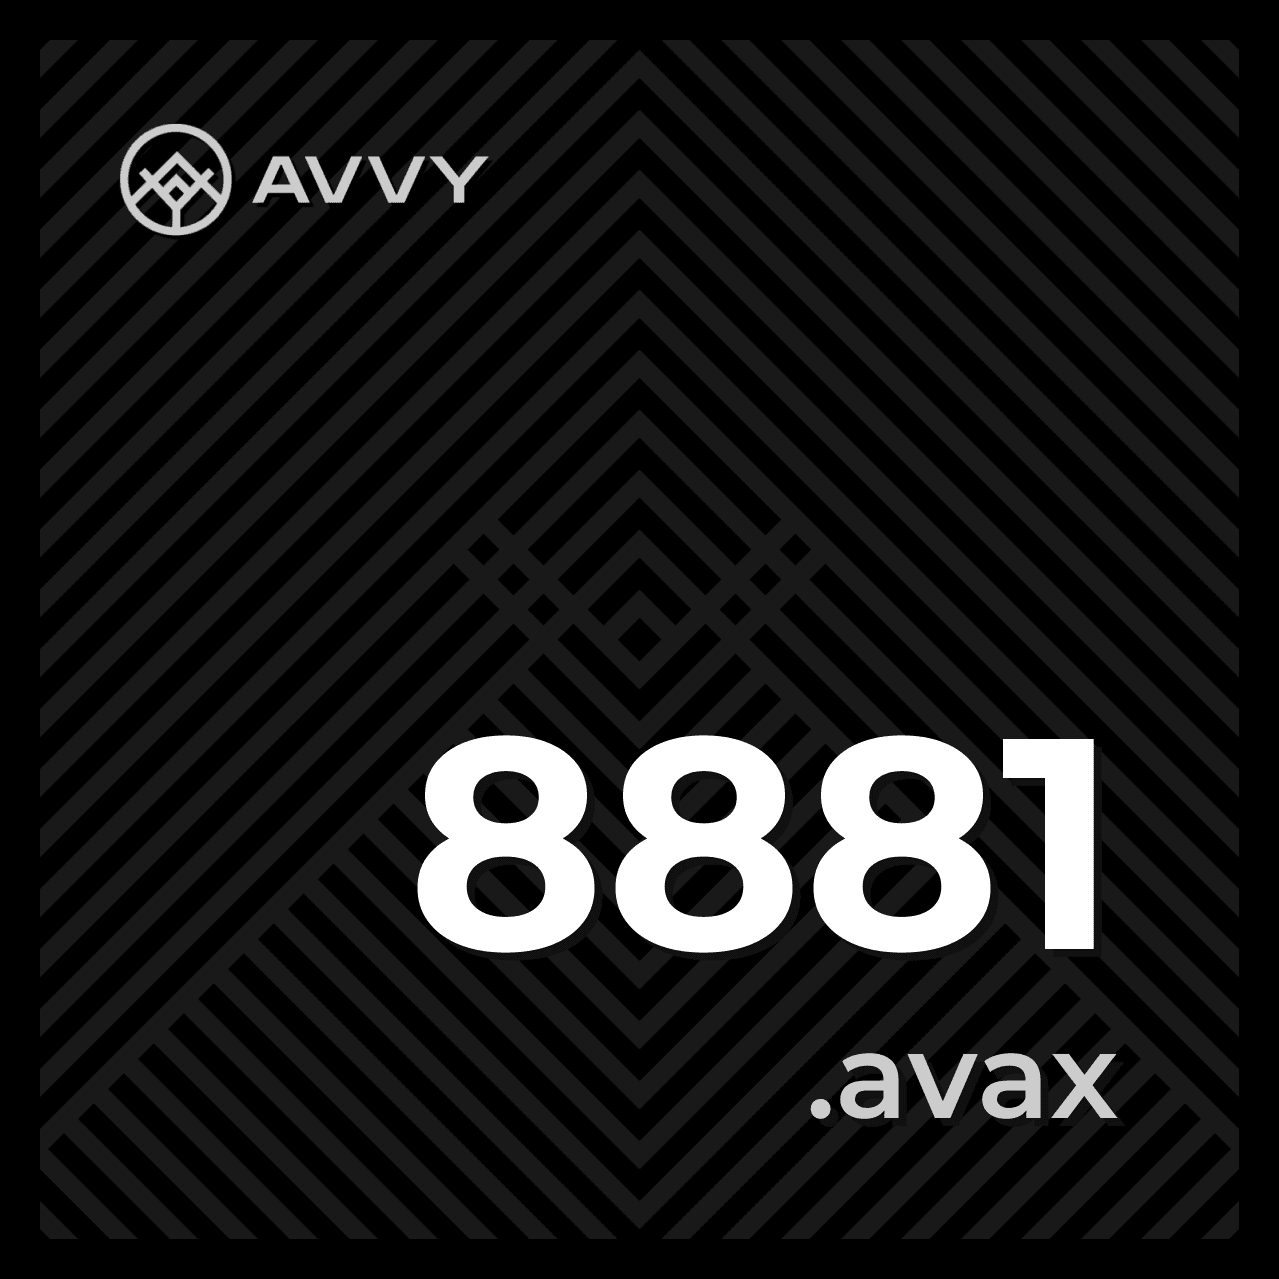 8881.avax